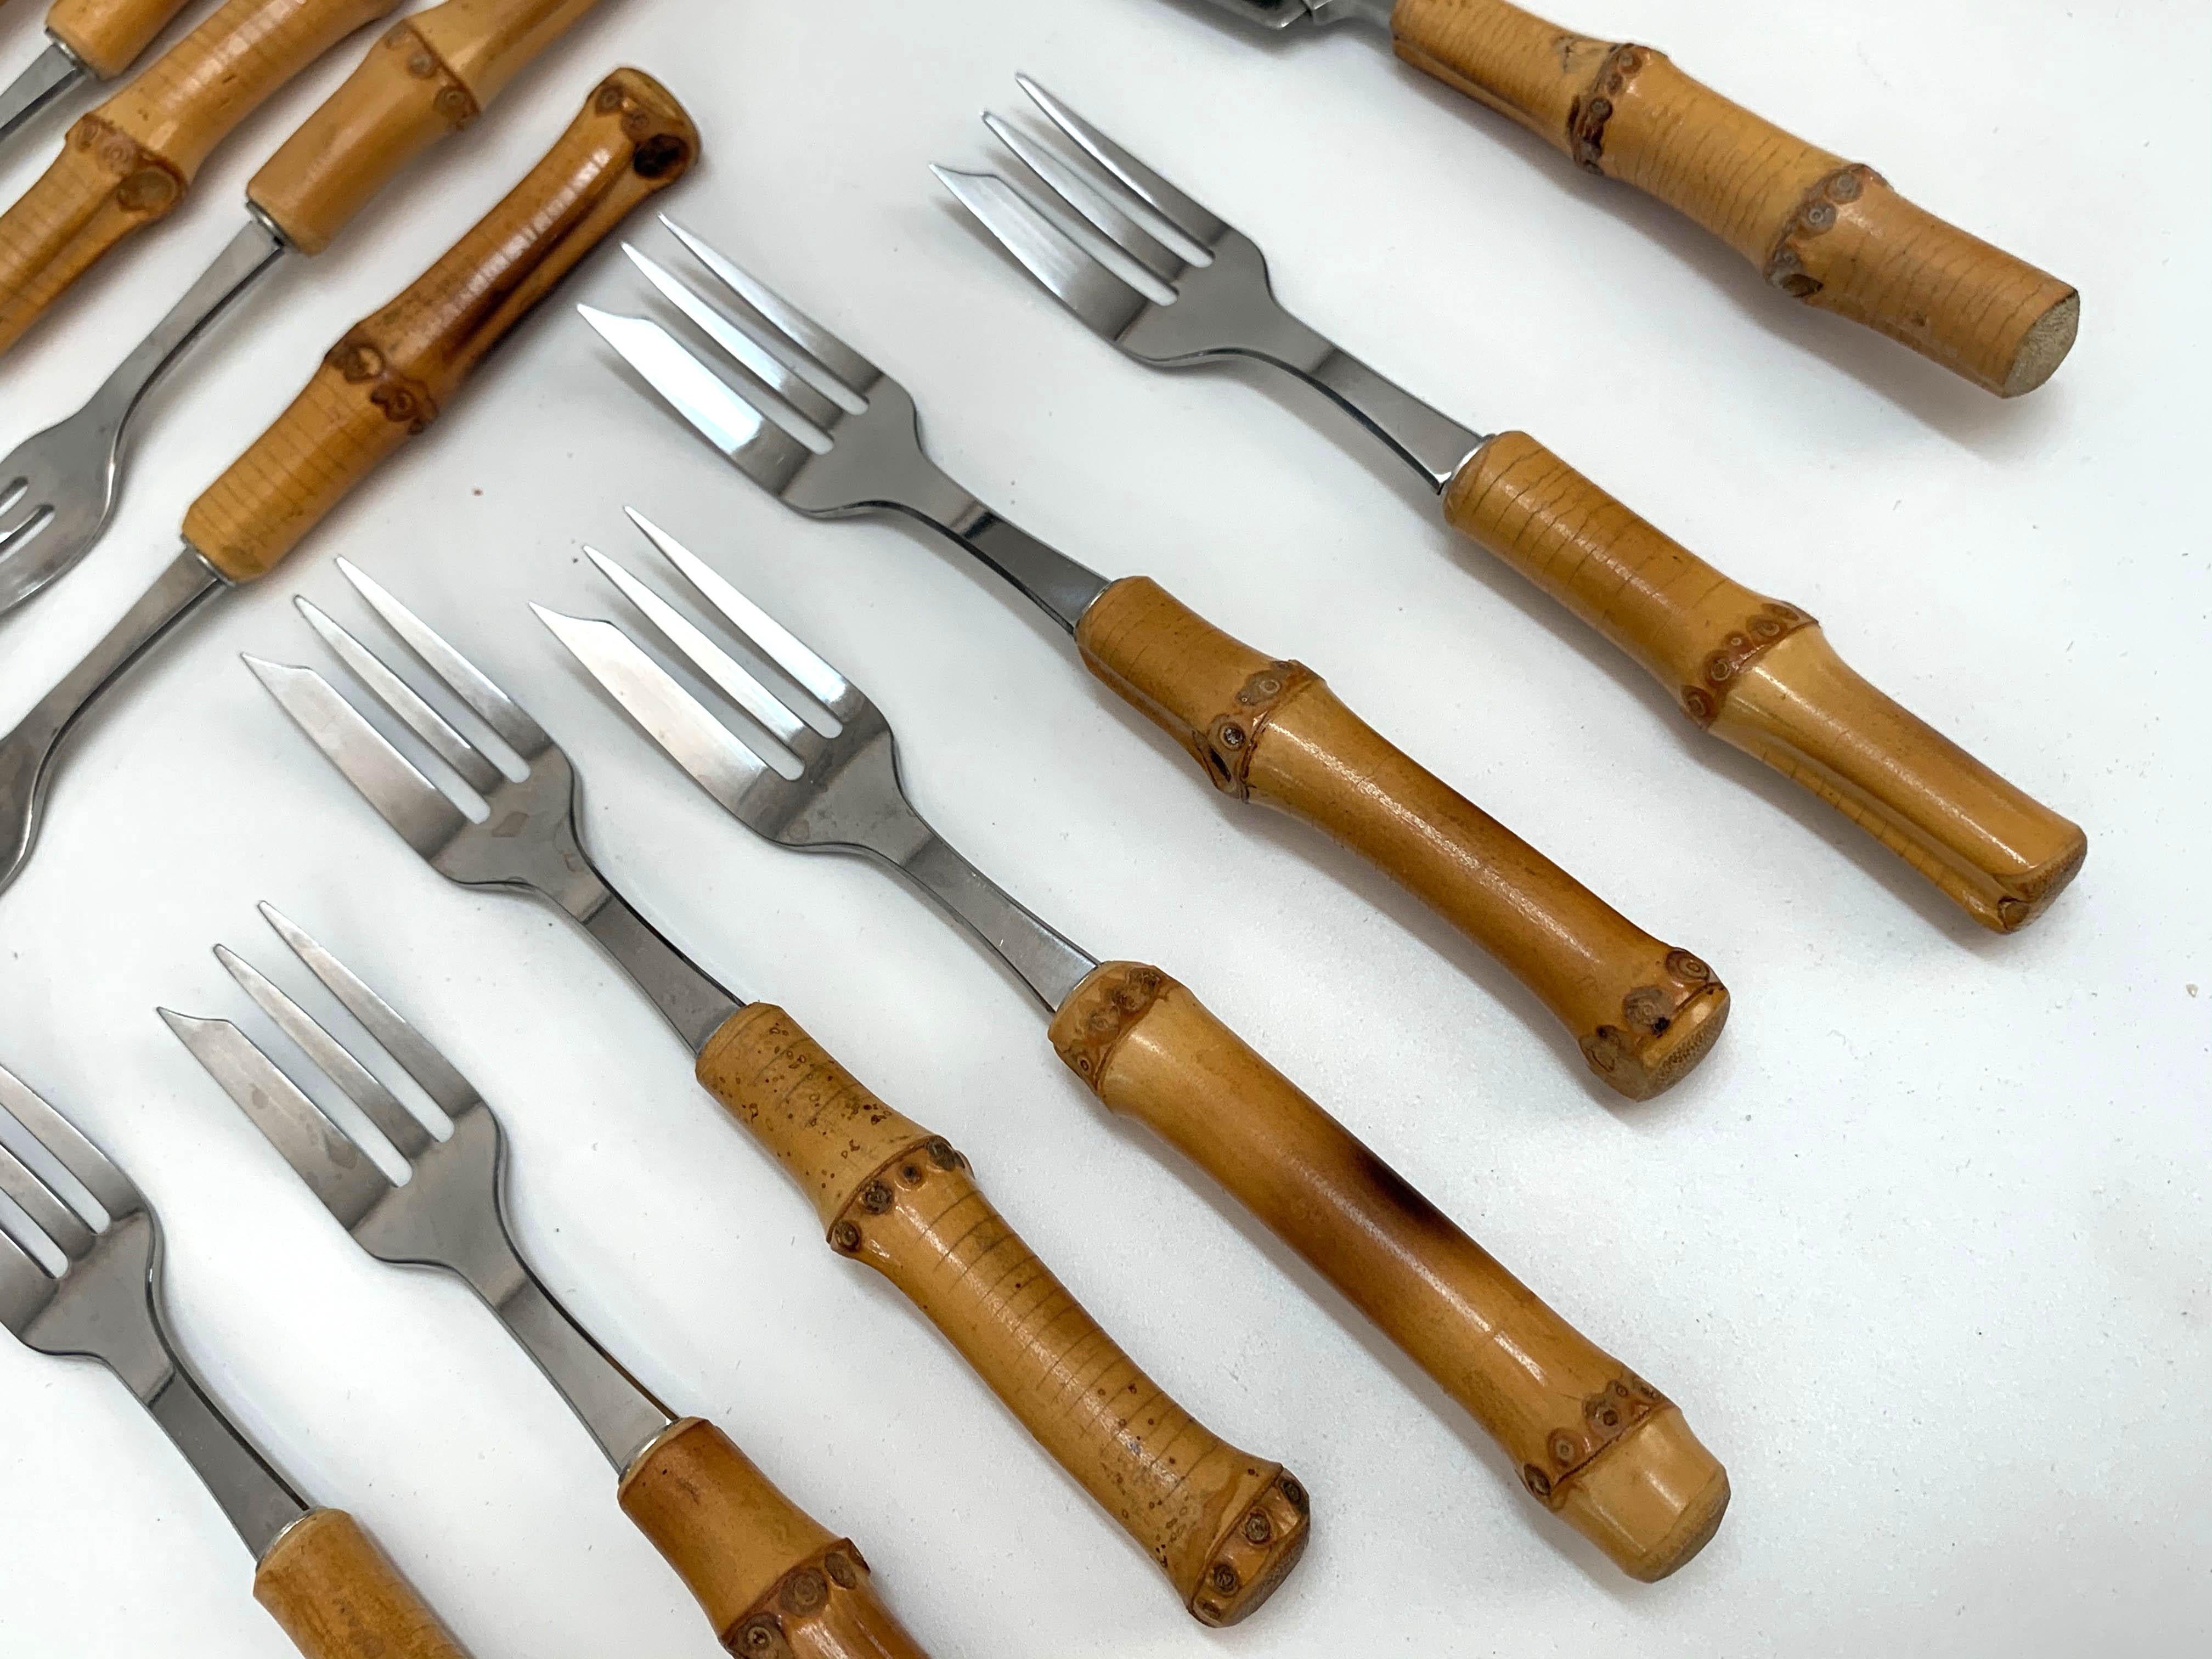 vintage rostfrei cutlery